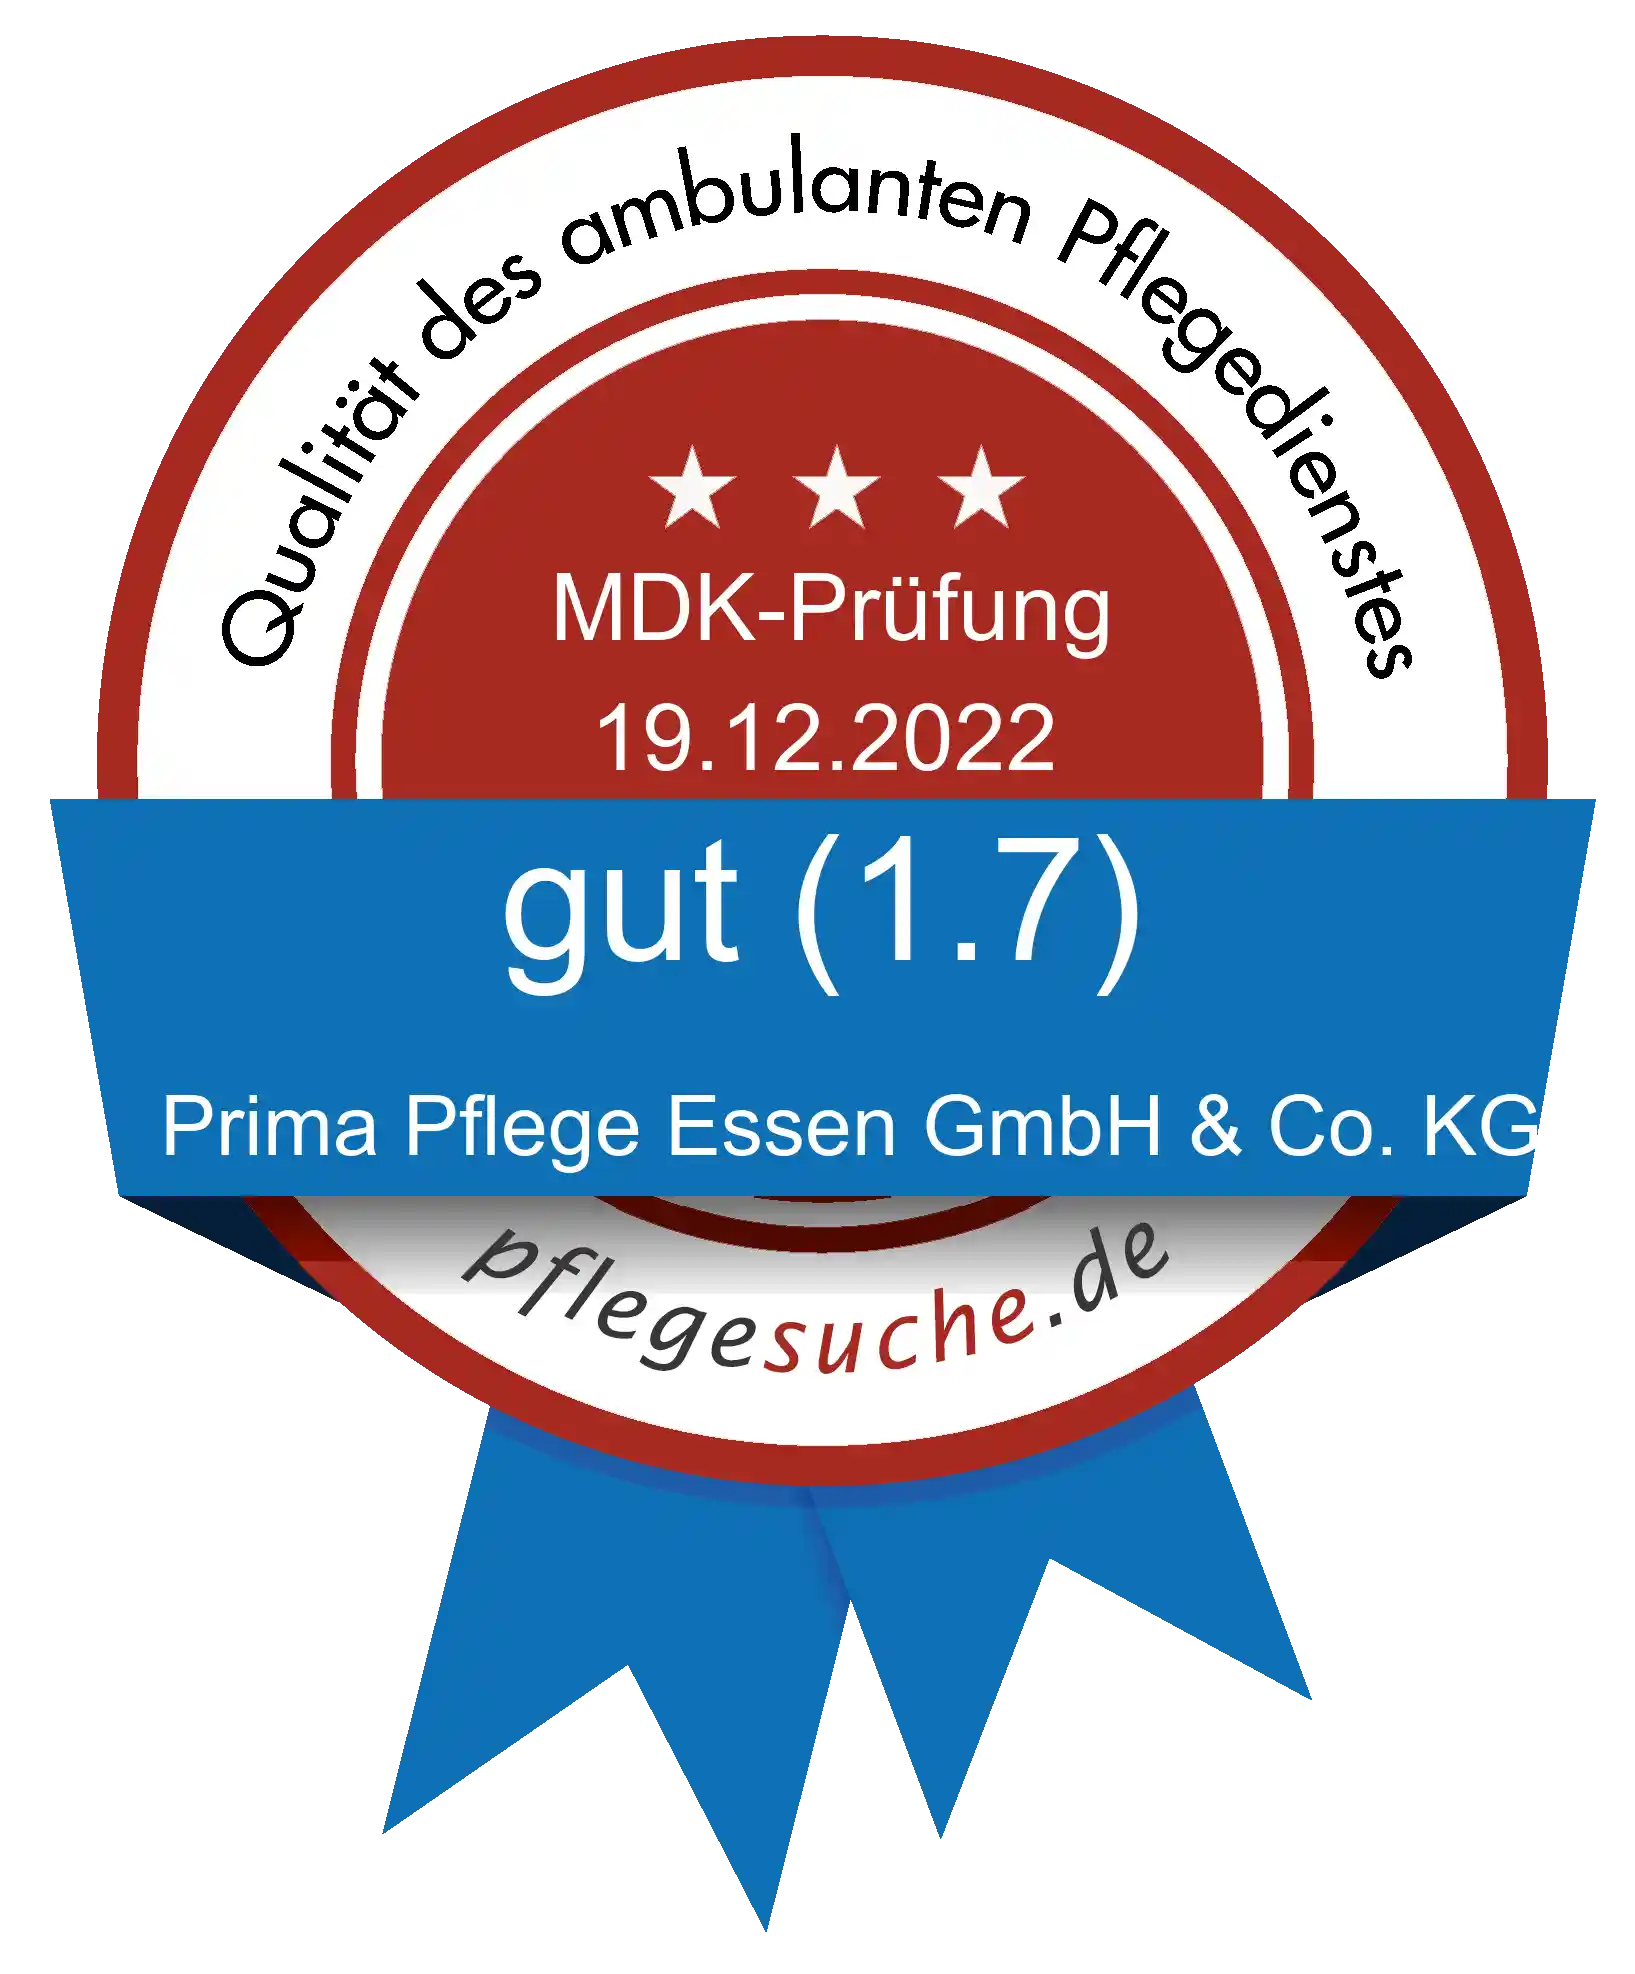 Siegel Benotung: Prima Pflege Essen GmbH & Co. KG